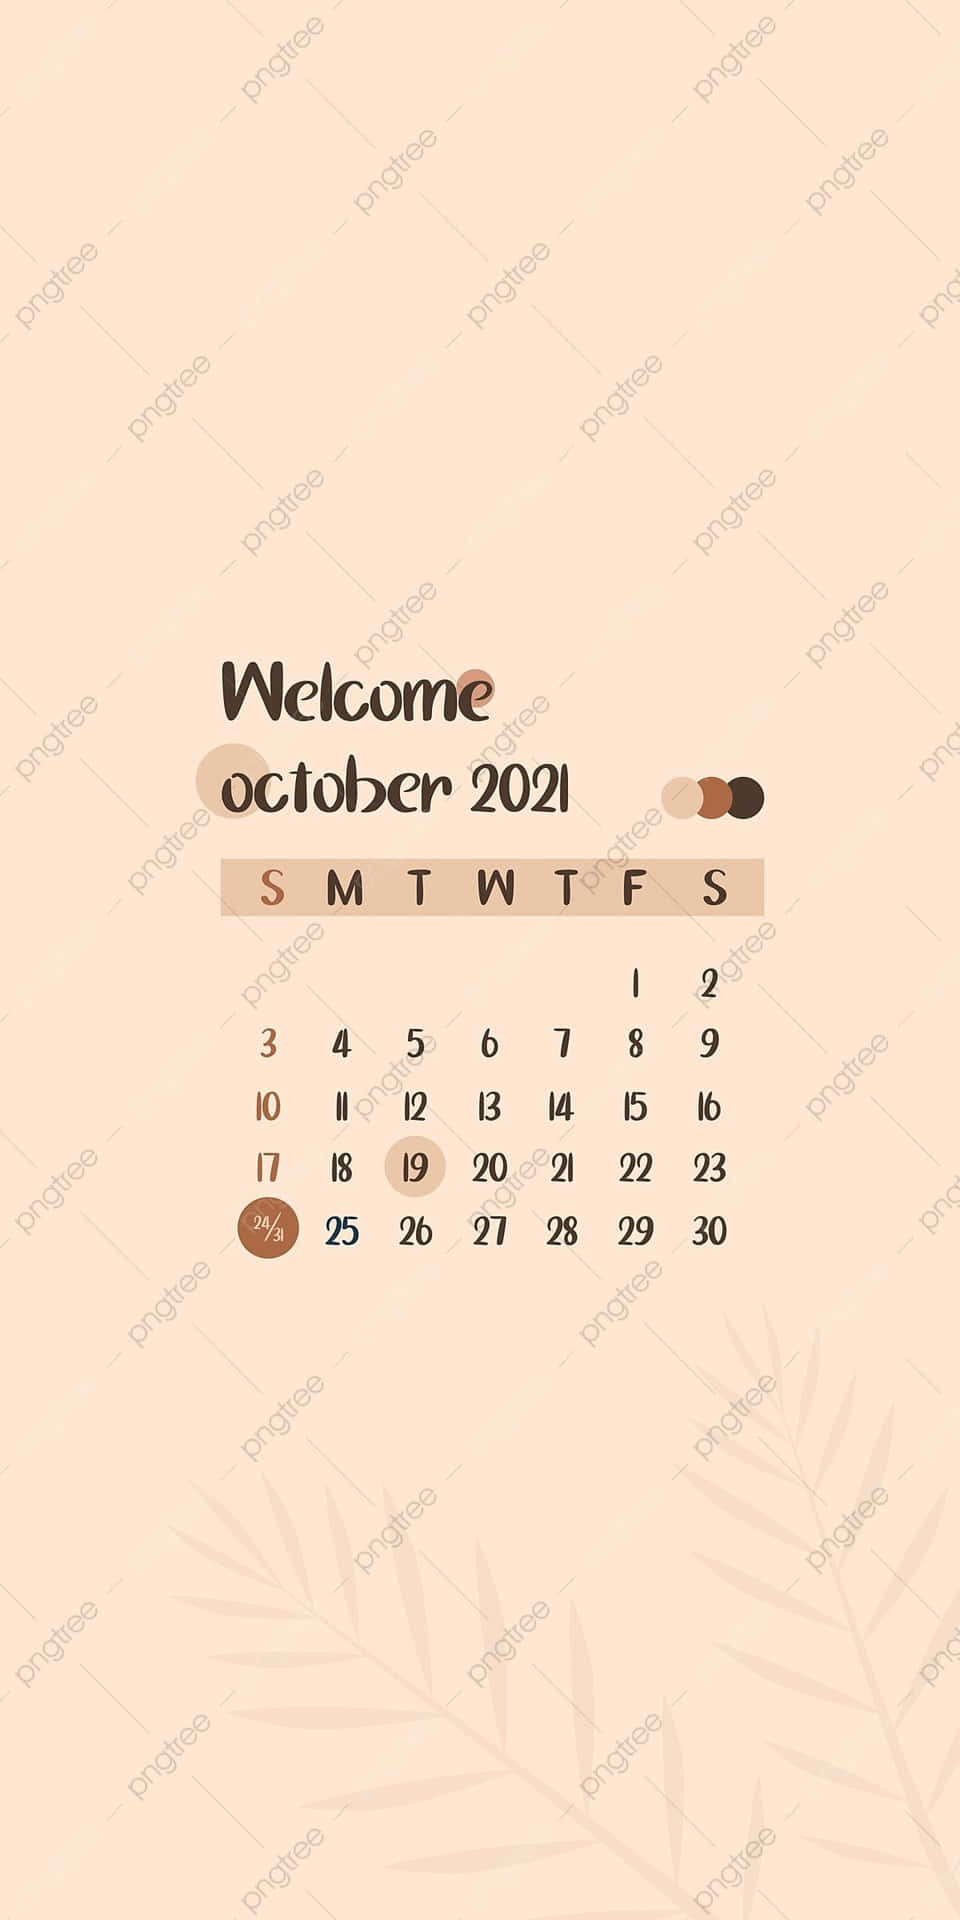 Hållkoll På Viktiga Datum I Oktober Med Denna Kalender För 2021 Som Bakgrundsbild På Din Dator Eller Mobil. Wallpaper